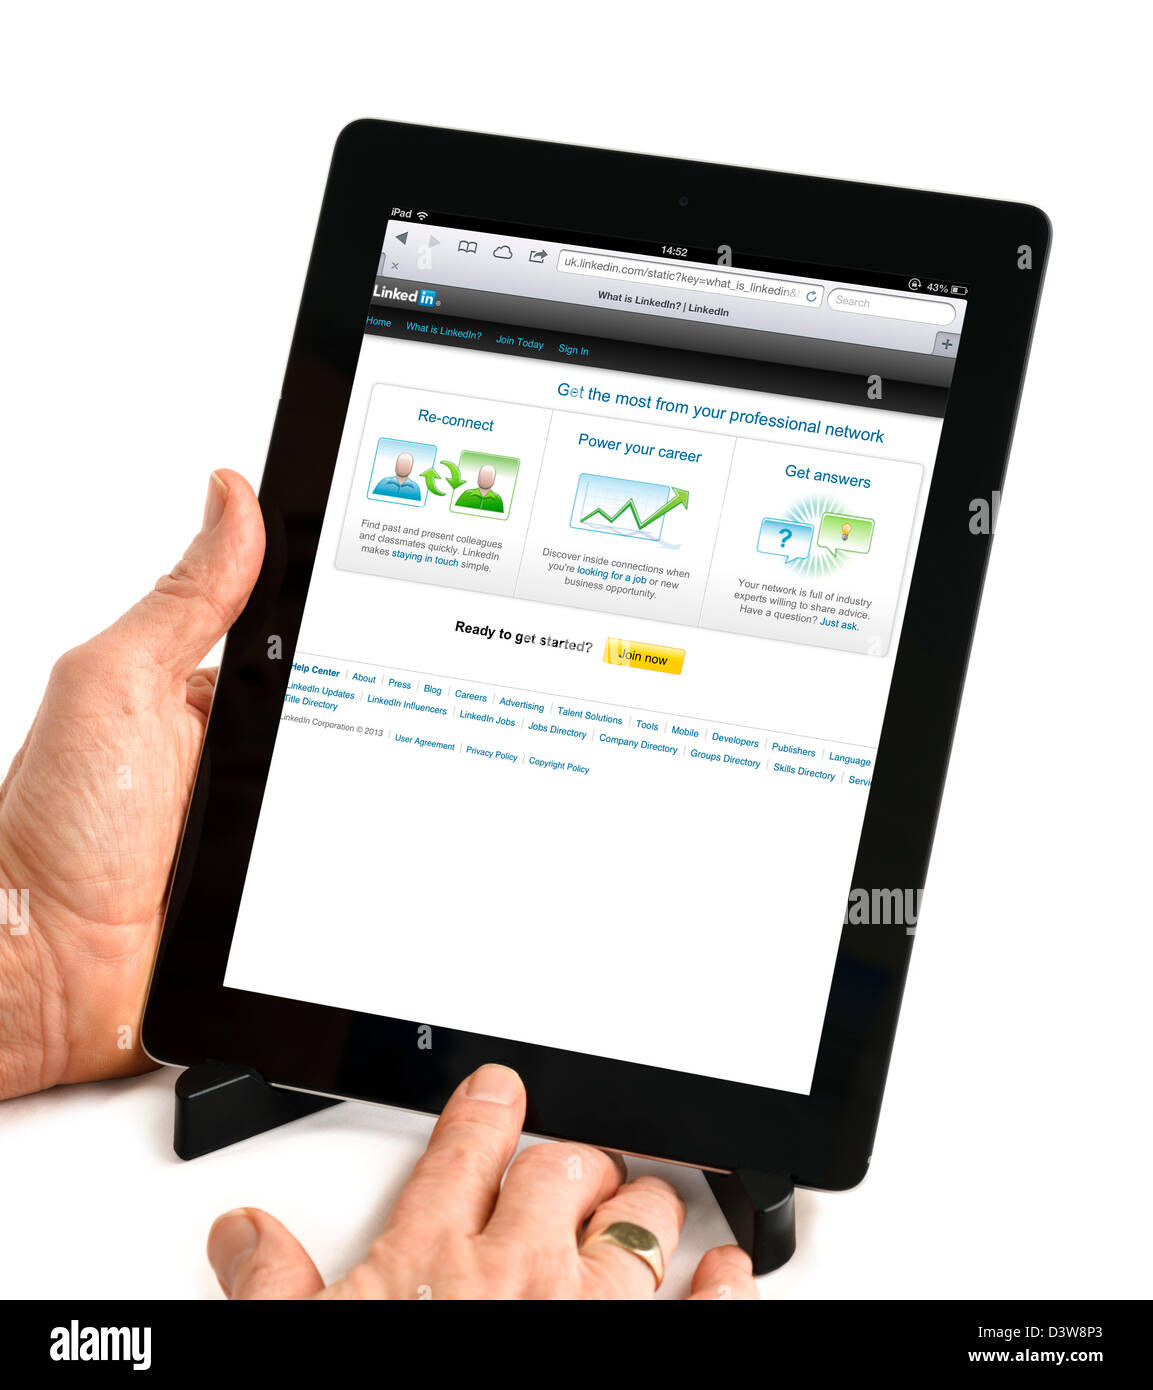 Le site de réseau social professionnel LinkedIn sur un iPad 4e génération Banque D'Images